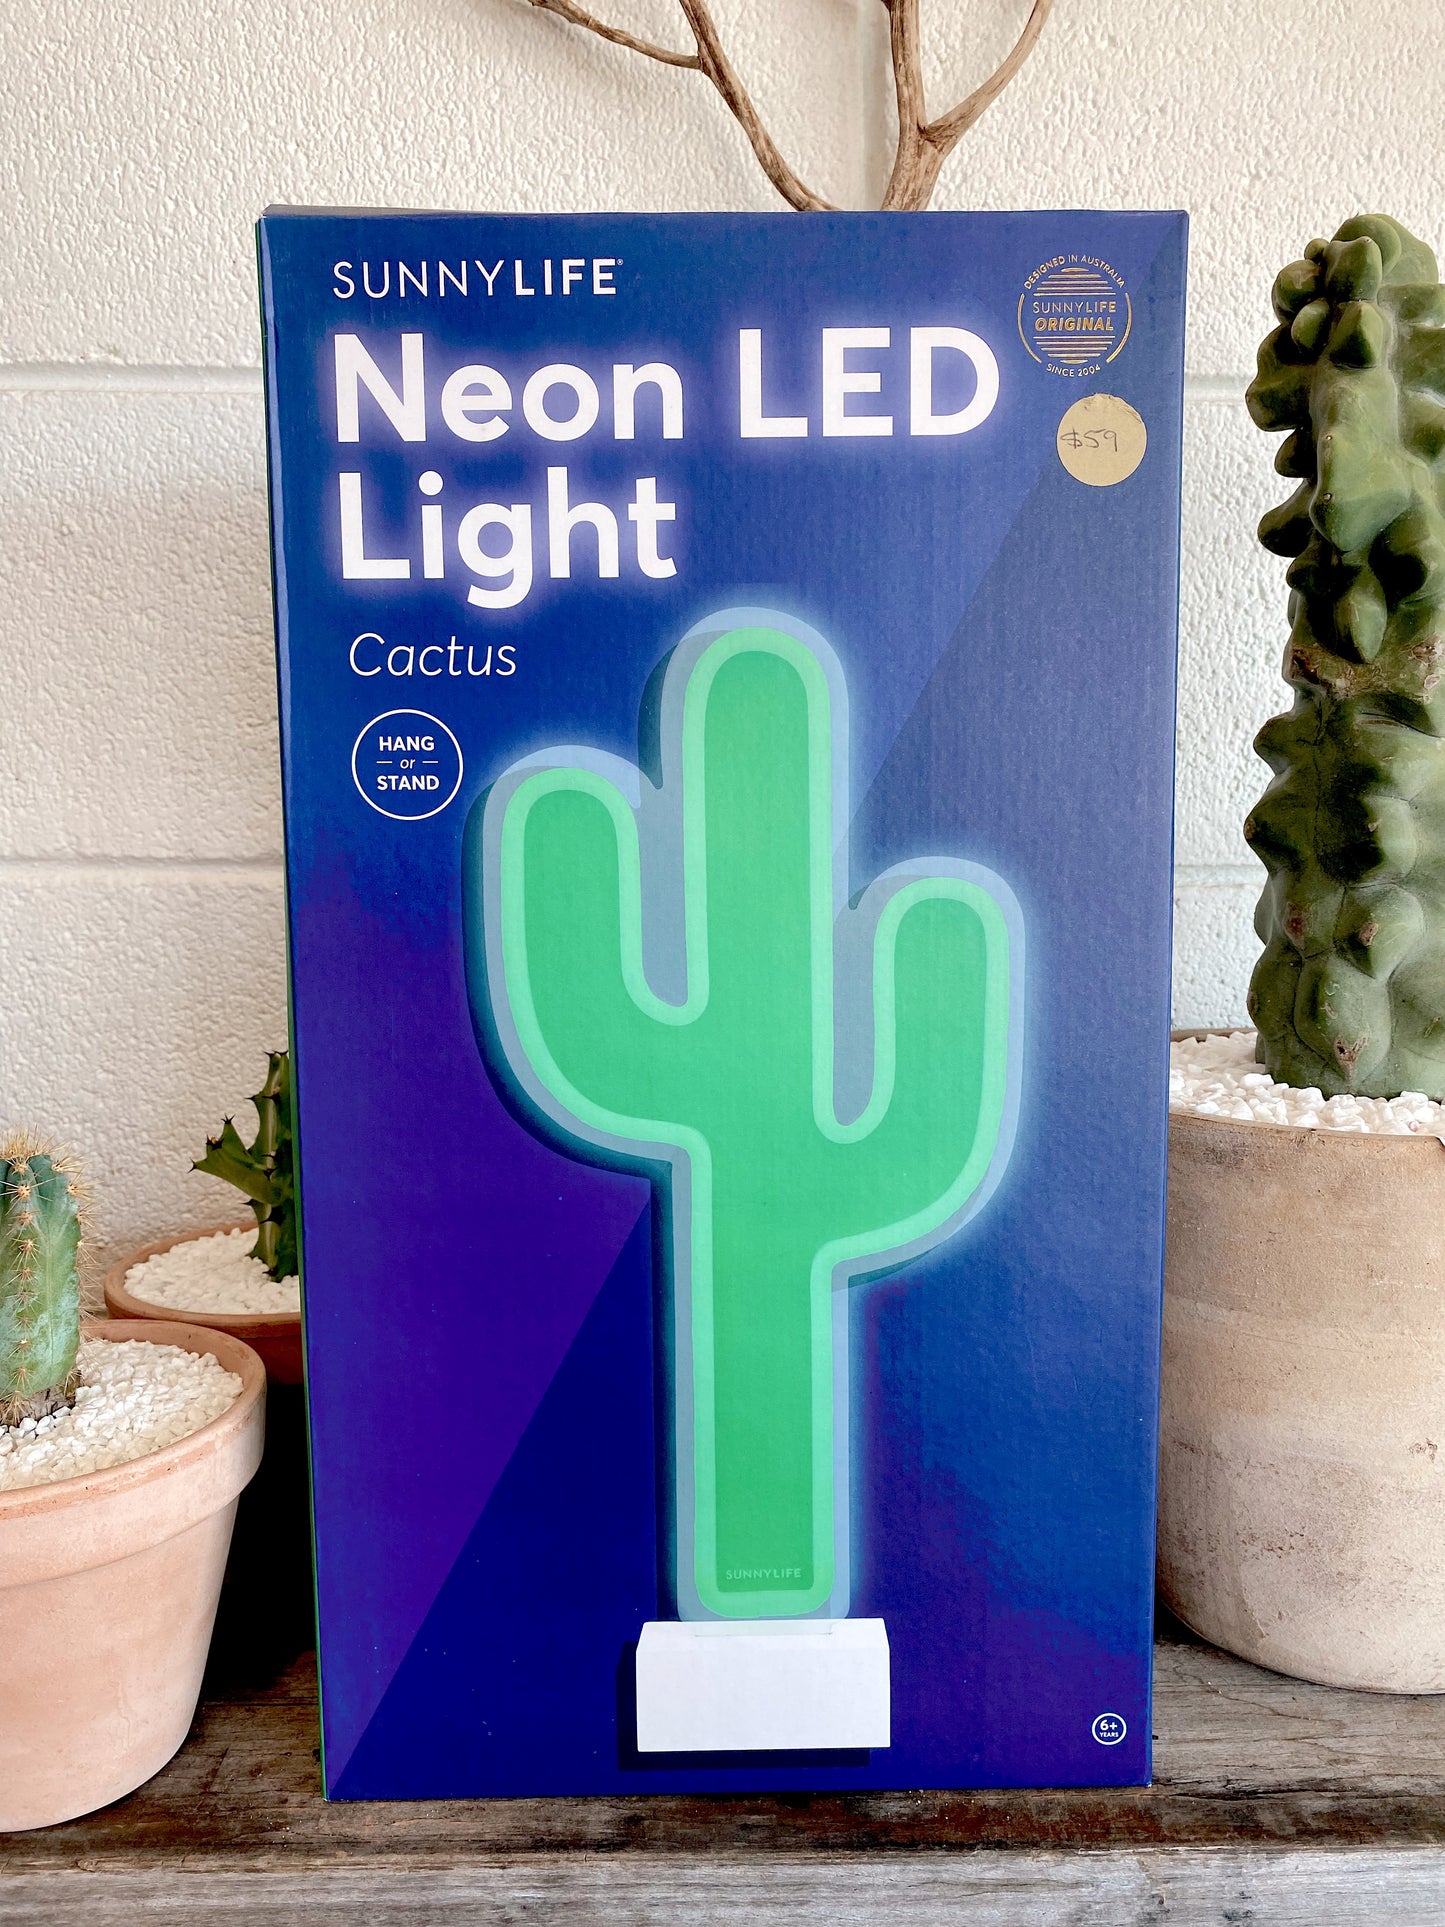 Sunnylife: Neon LED cactus light